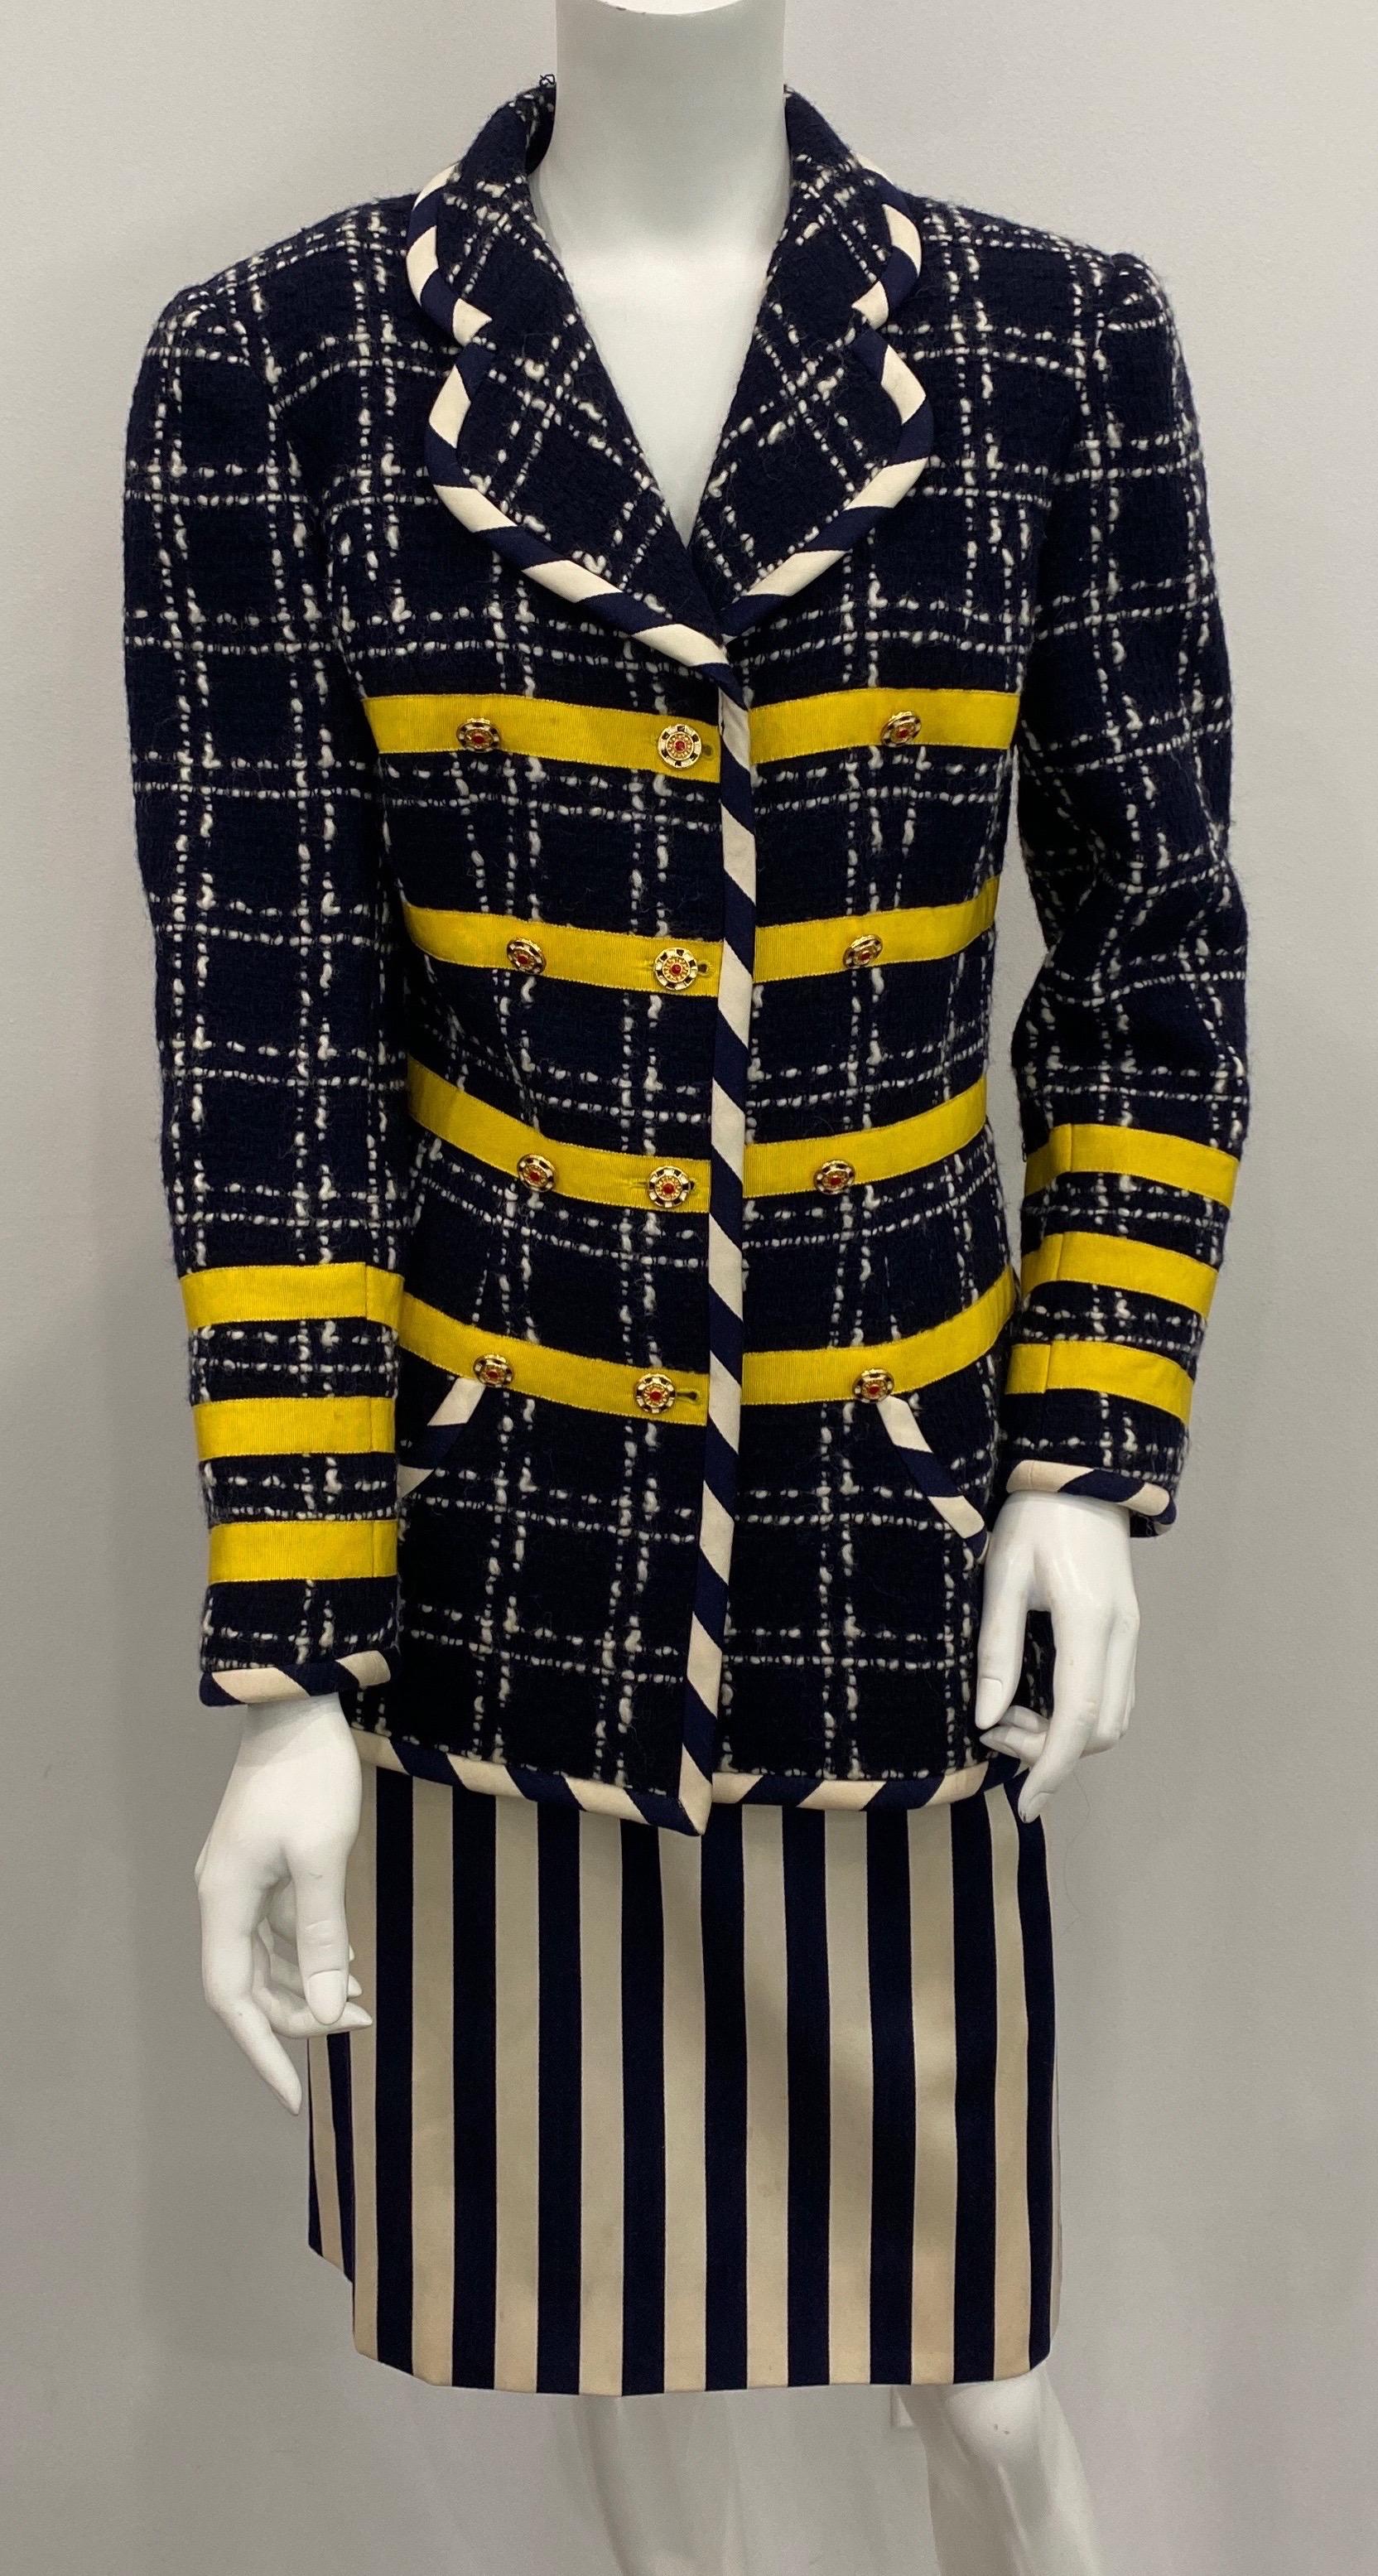 Diese marineblaue Boucle-Jacke aus den 1990er Jahren hat weiße Nähte, die ein großes Karomuster ergeben. Die Jacke ist außerdem mit 3 gelben Ripsbändern versehen, die waagerechte Reihen entlang der Vorderseite und der Ärmel bilden. Die vollständig